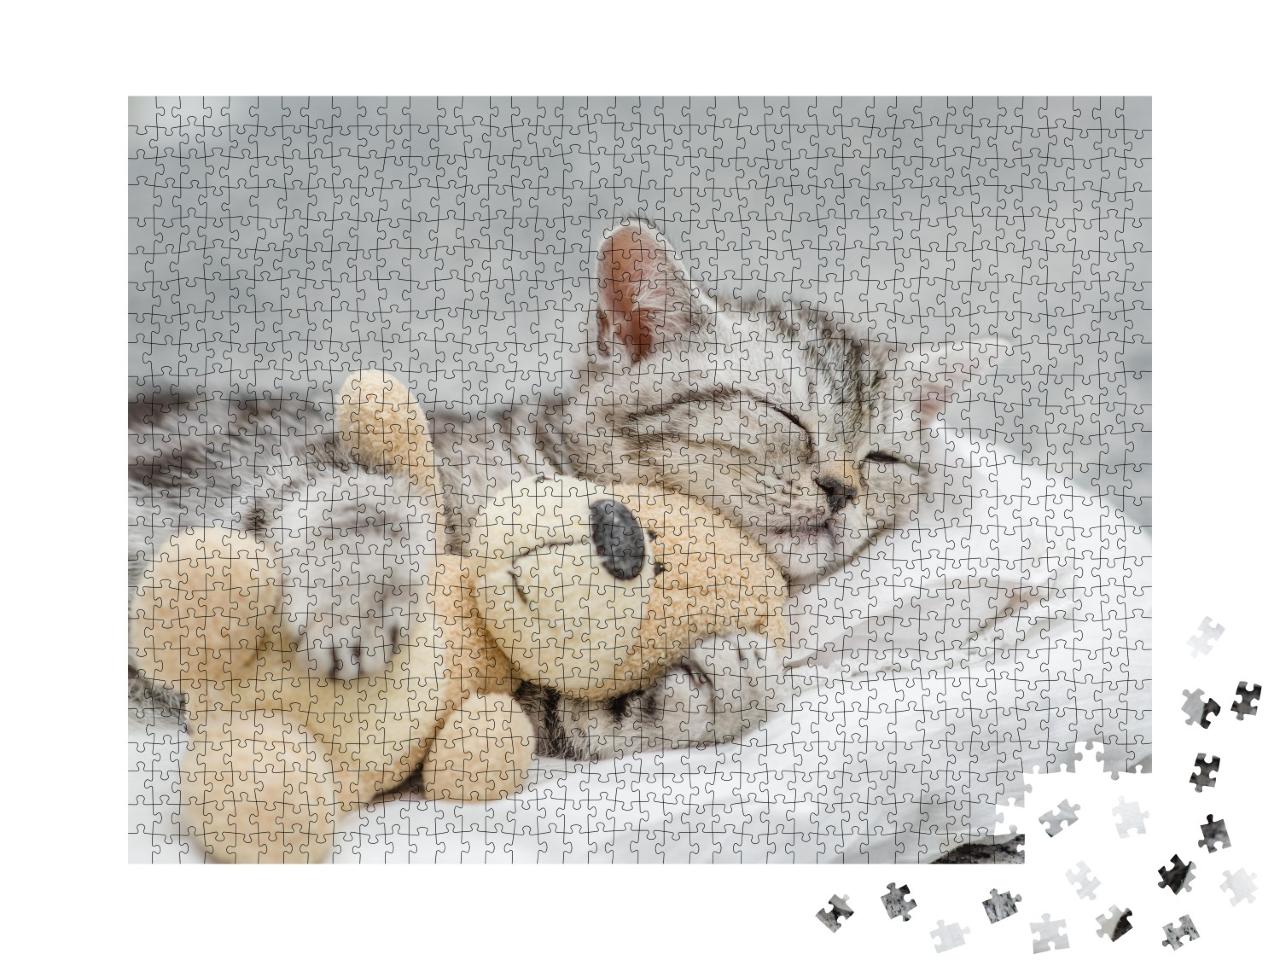 Puzzle 1000 Teile „Niedliches Kätzchen schmust mit einem Teddy“